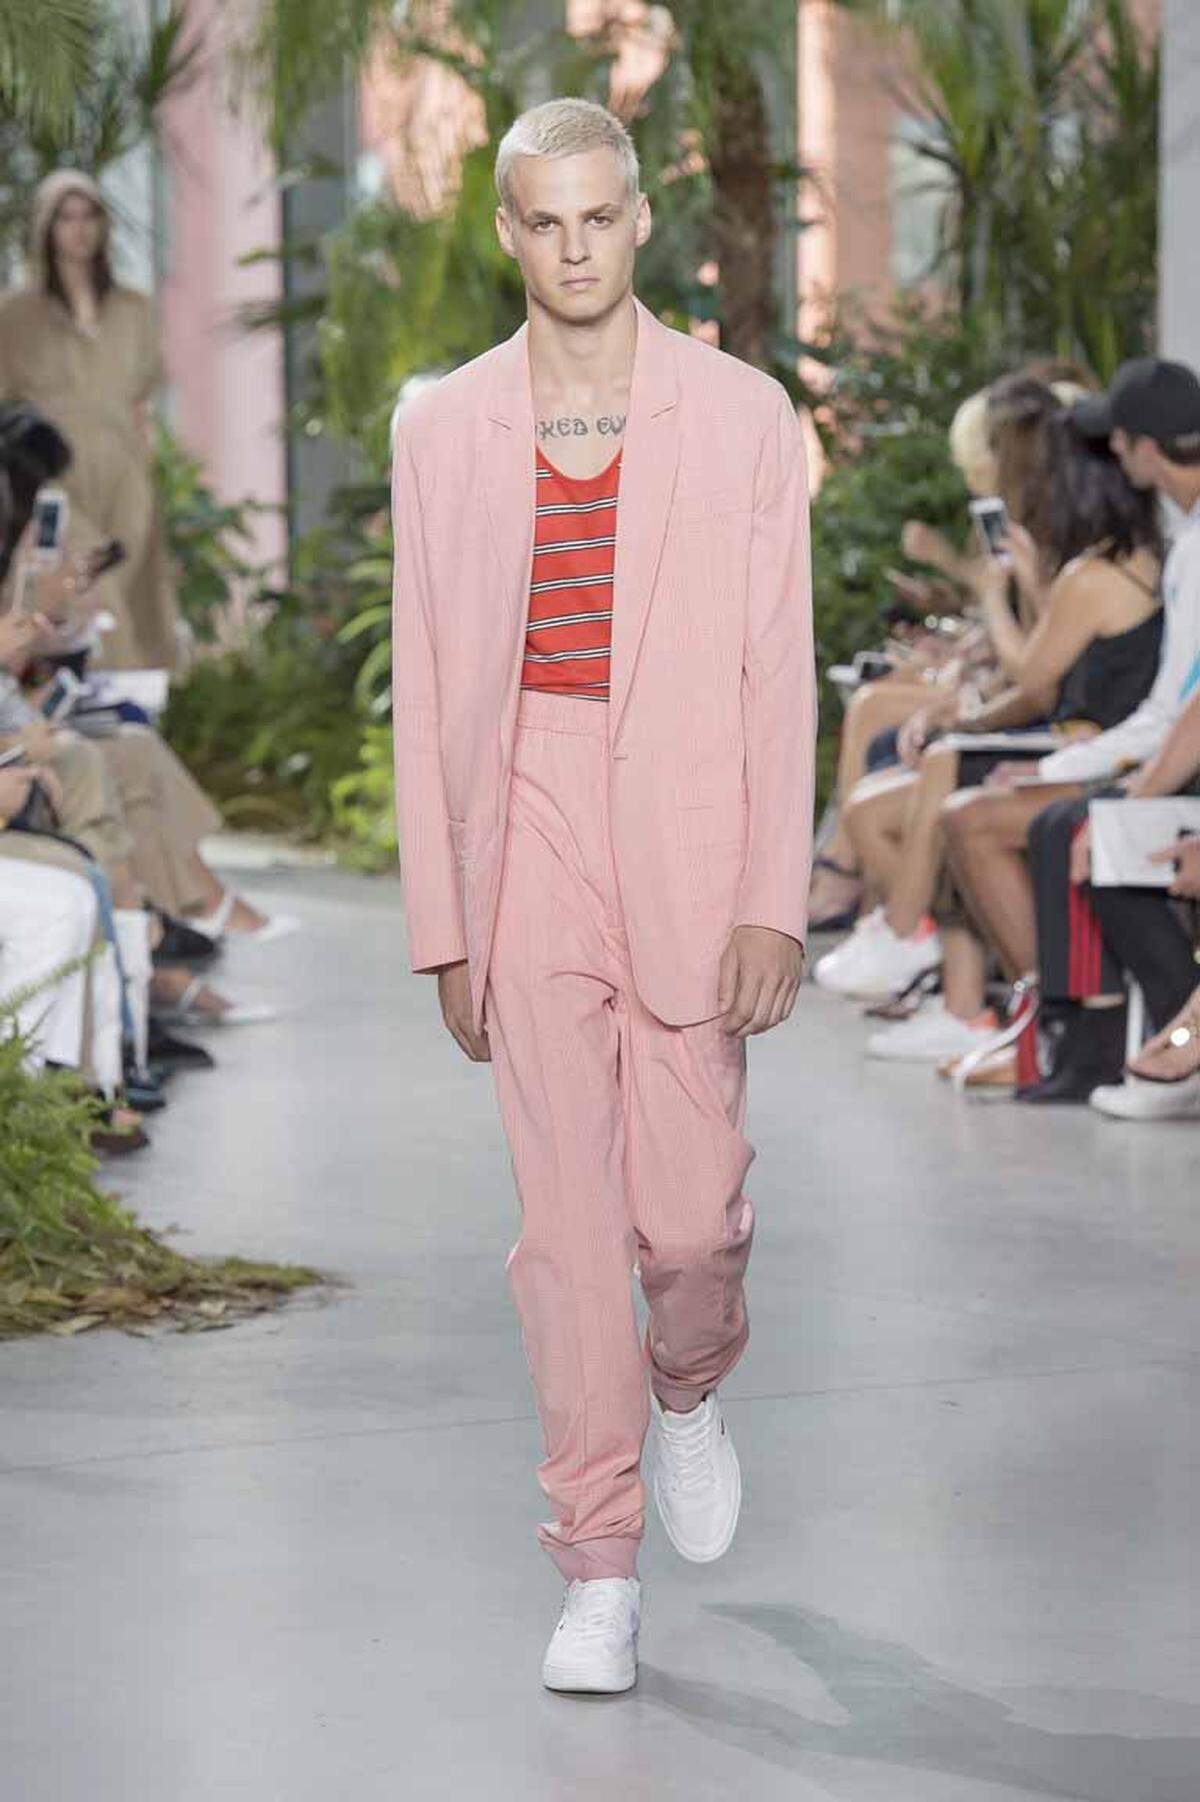 Pink ist das neue Schwarz, wenn man auf die Laufstege der großen Designer blickt. Auch Männer können zum rosaroten Anzug greifen, wenn es nach Lacoste geht.